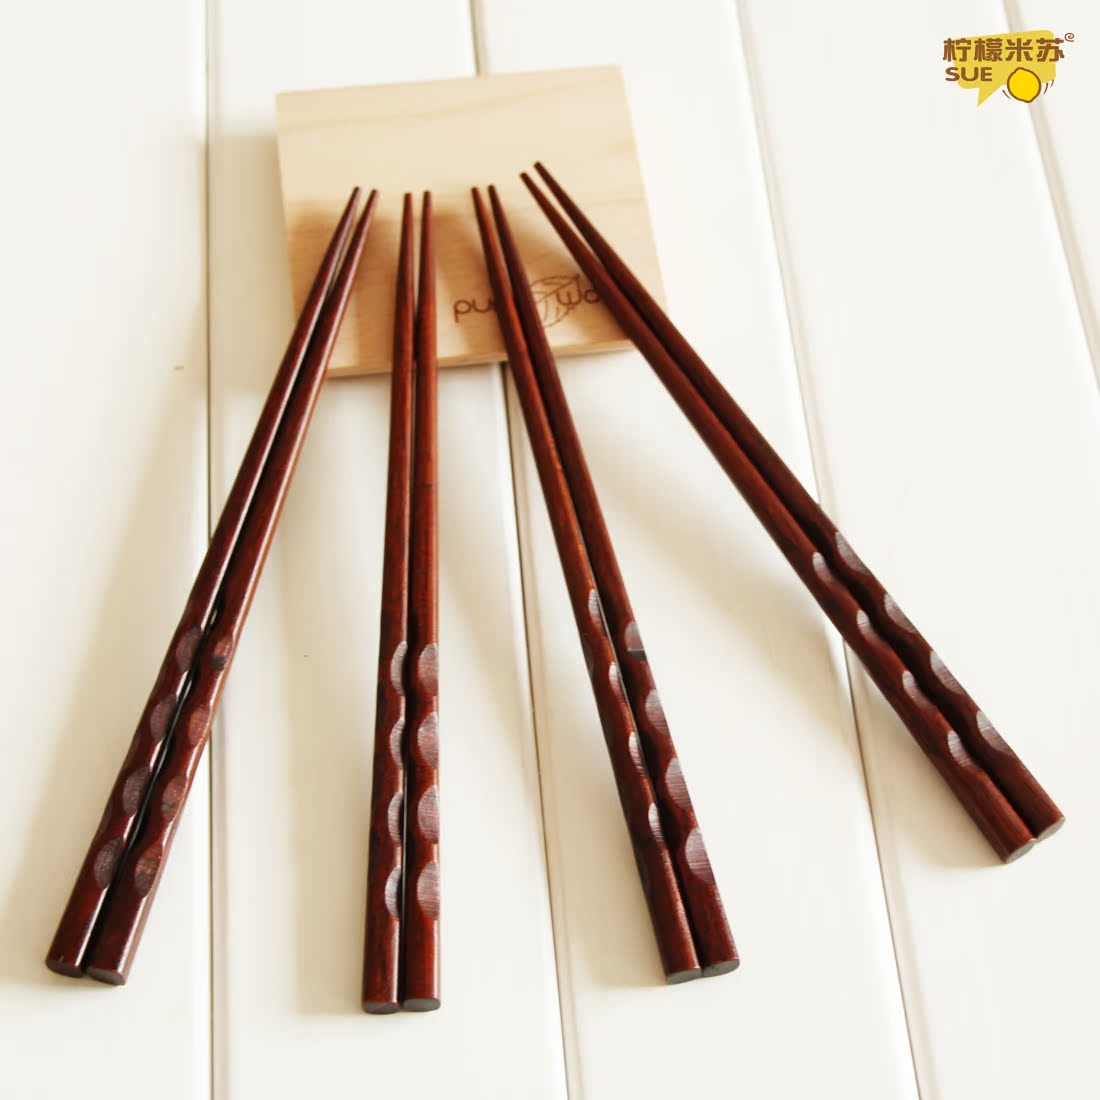 正品[筷子腿速成]筷子腿评测 怎么变成筷子腿图